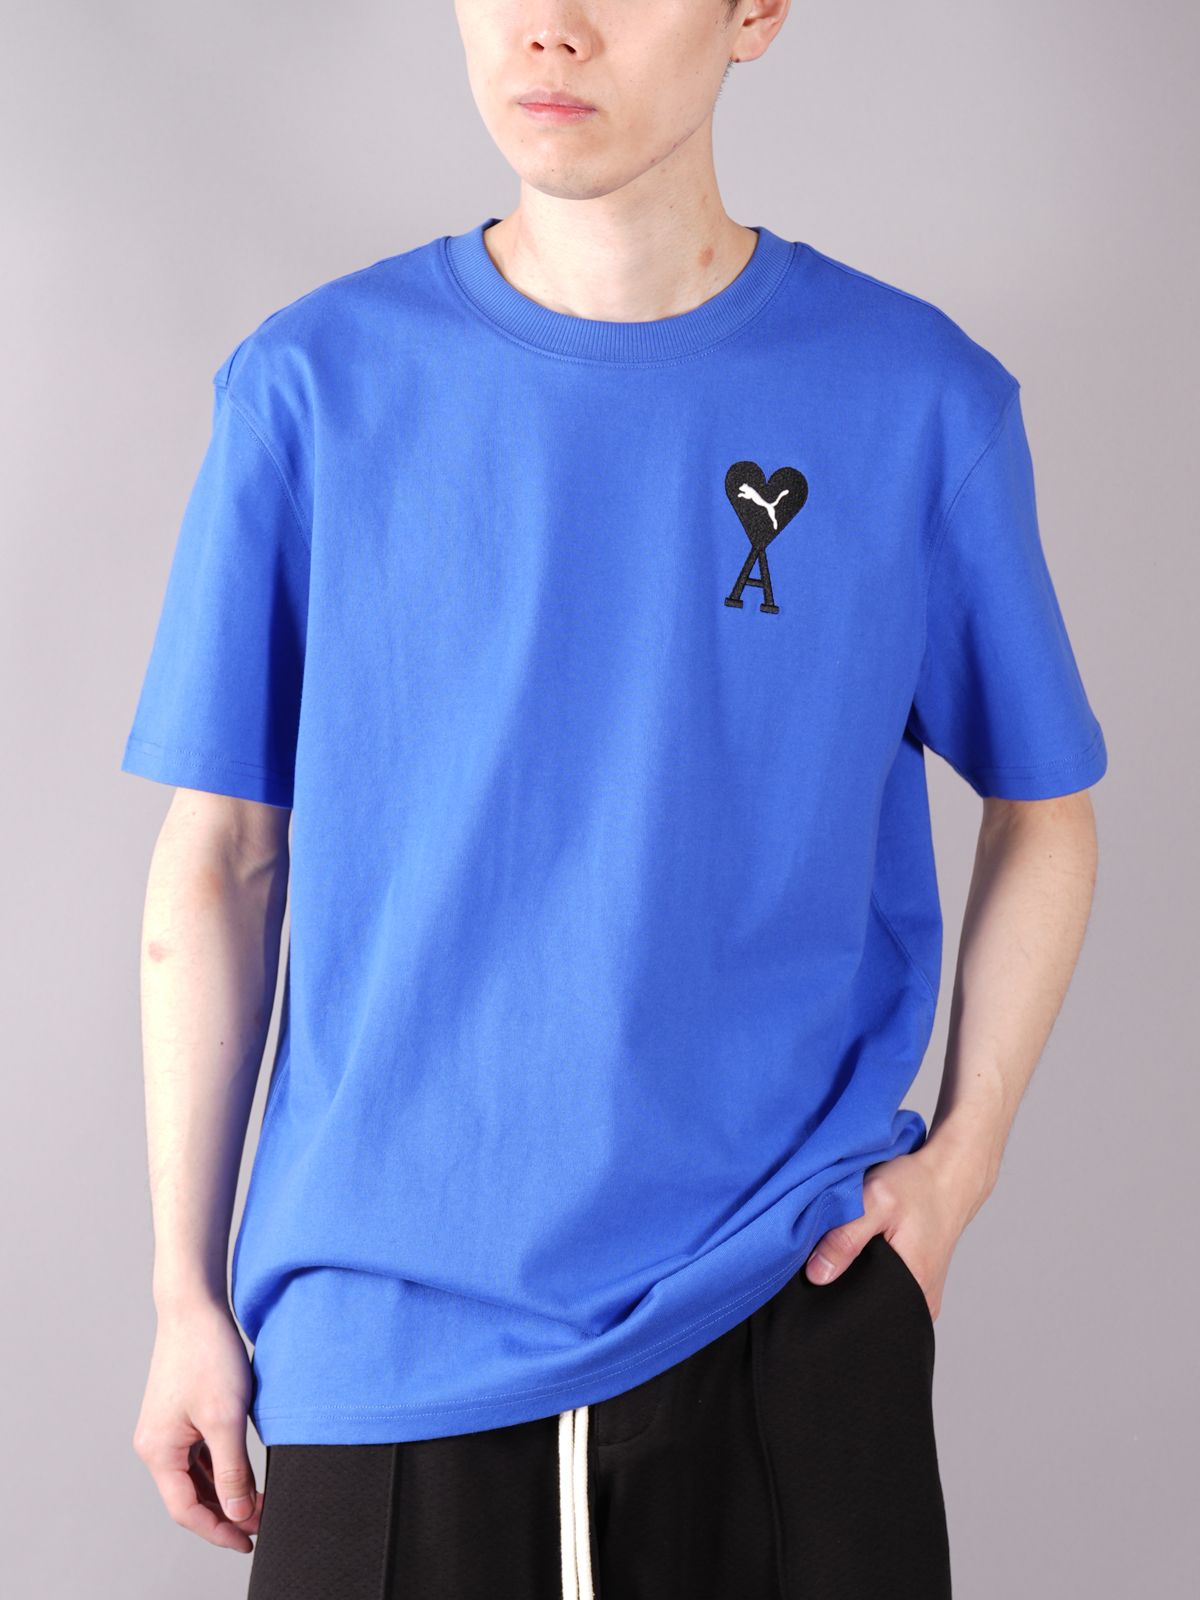 ラスト1点 / PUMA x Ami / GRAPHIC TEE / グラフィックTシャツ (ダスリングブルー) - S